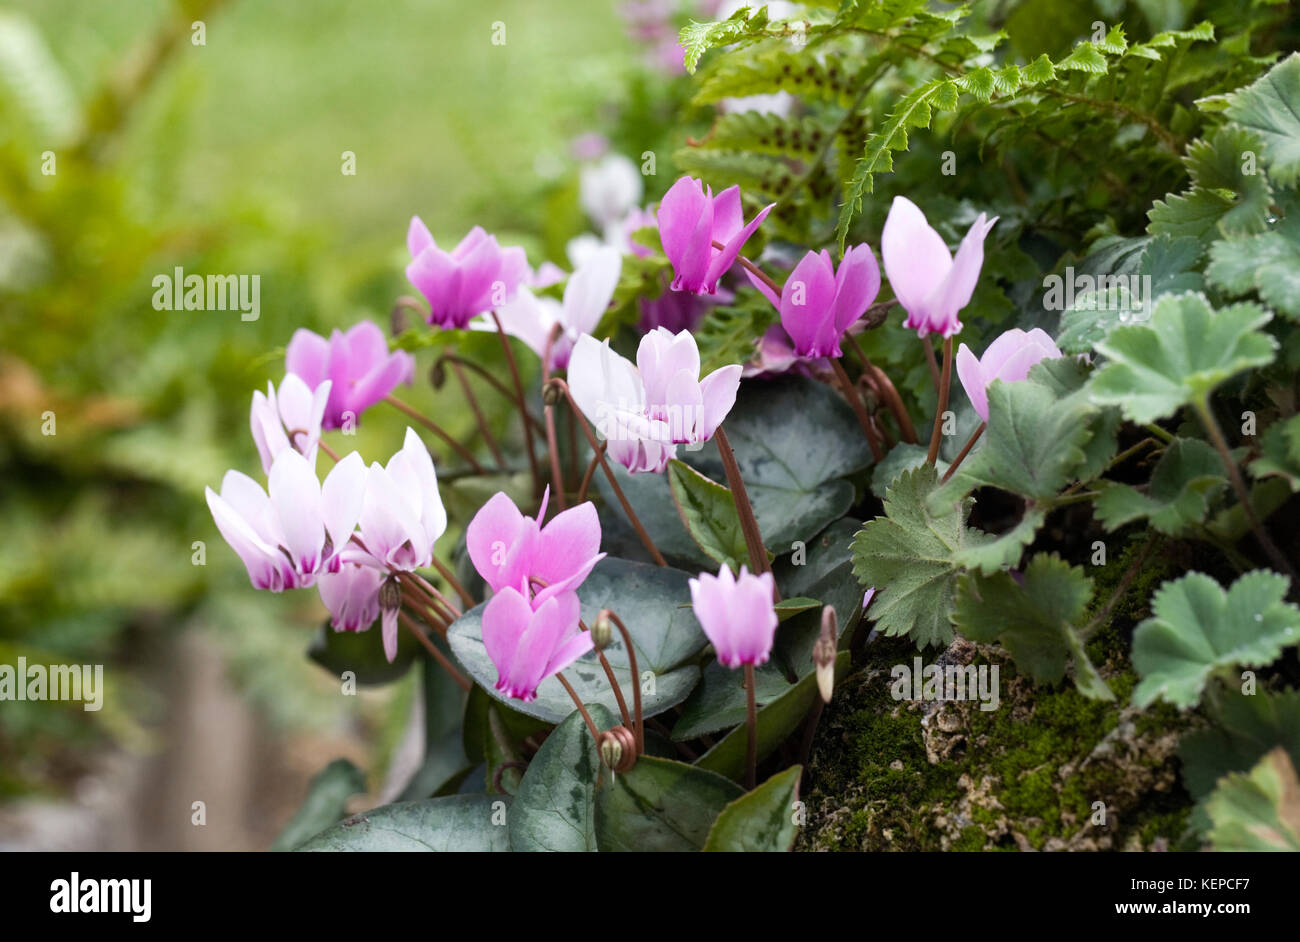 Cyclamen coum in the garden. Stock Photo